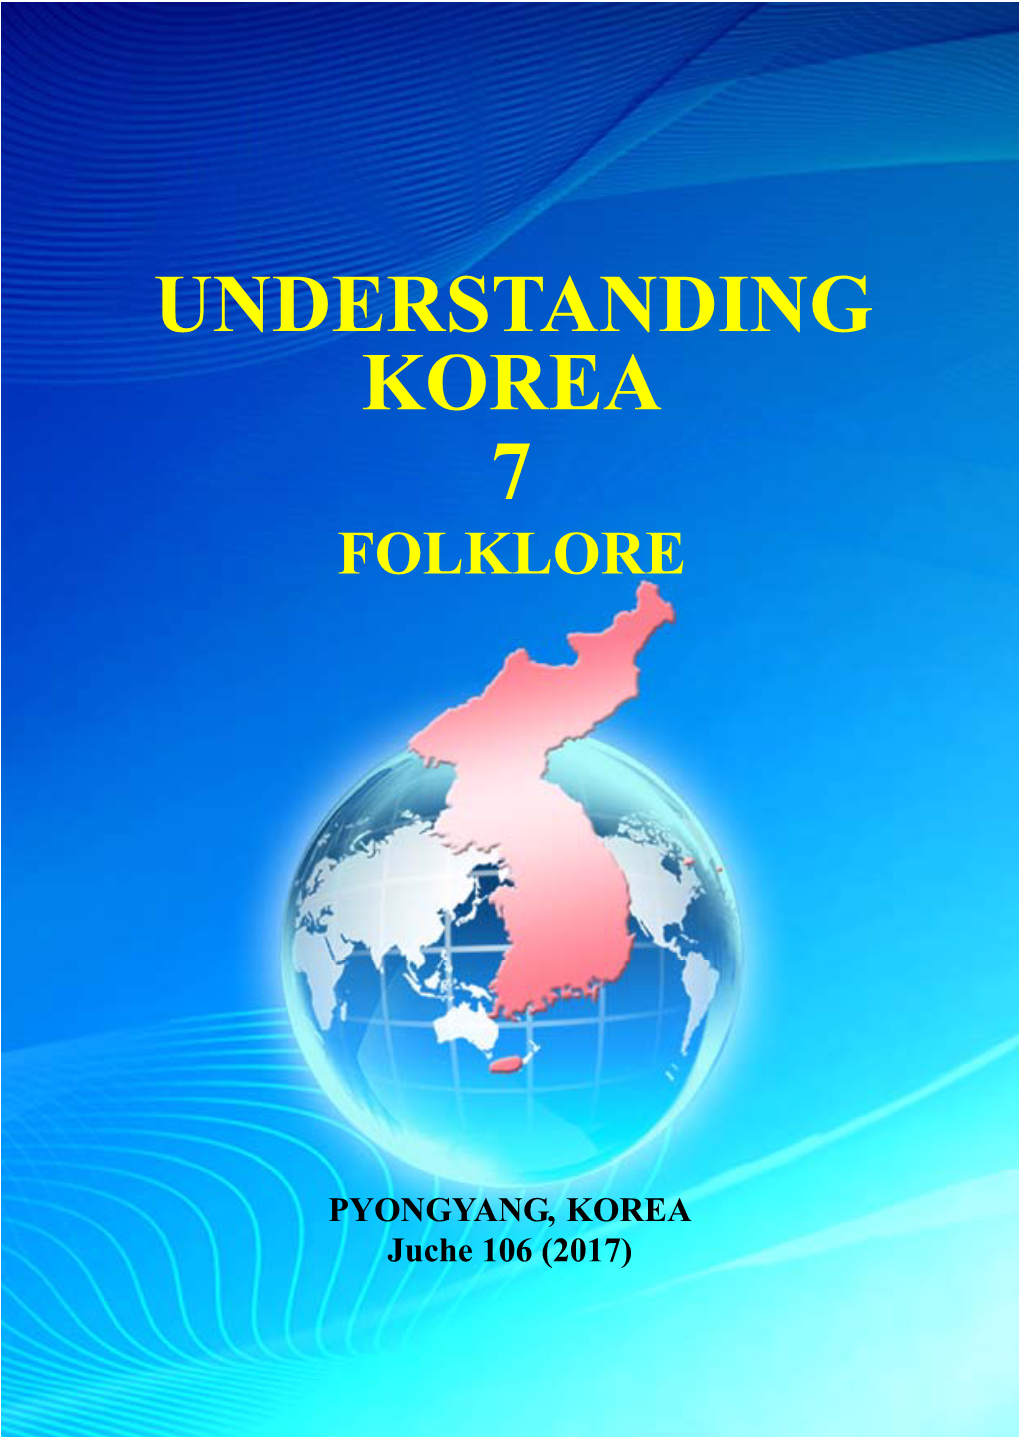 Understanding Korea 7 Folklore